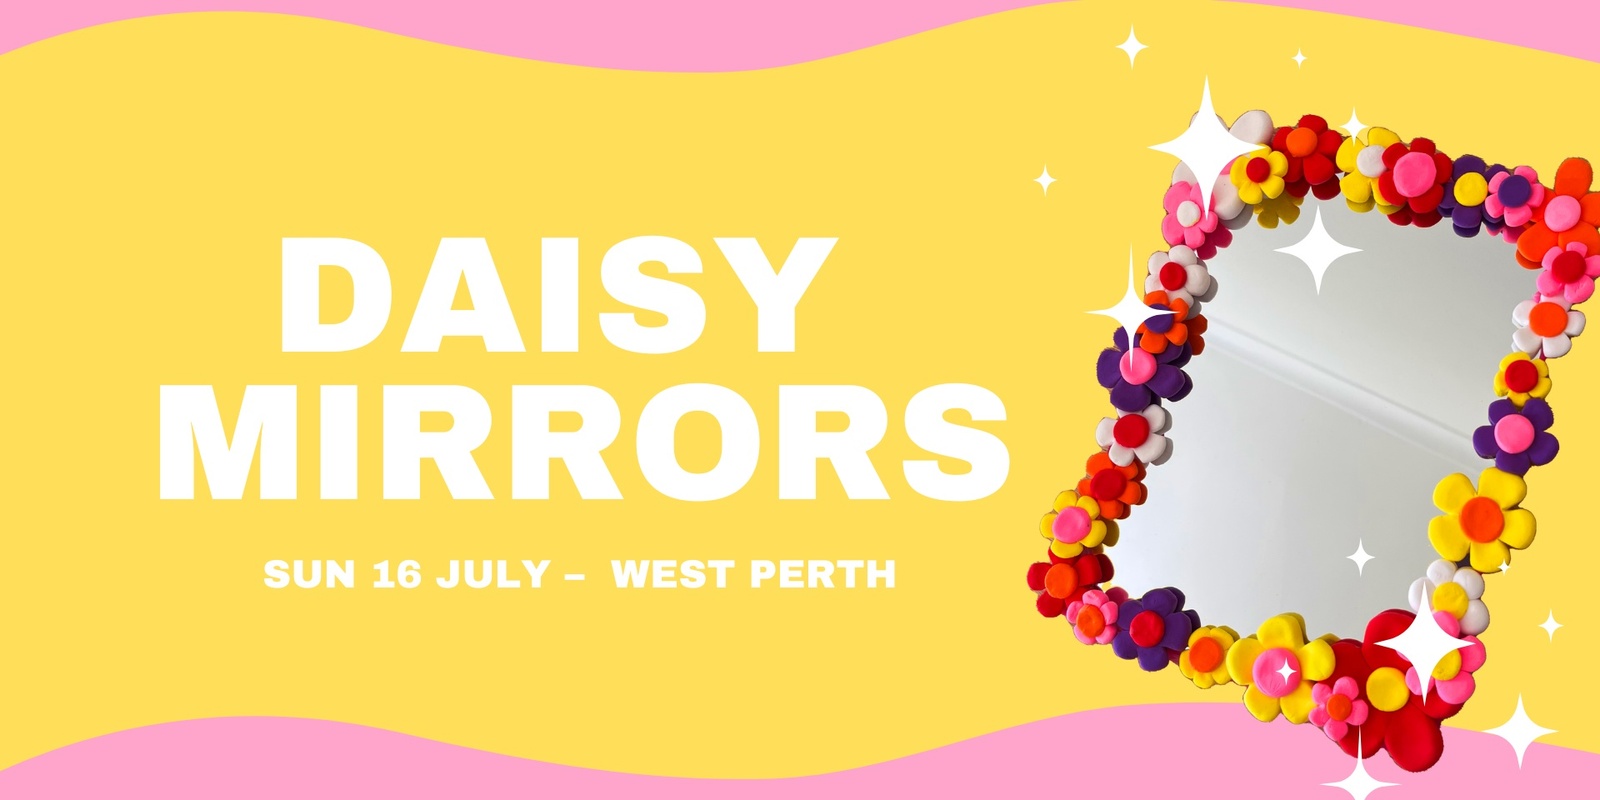 Daisy Mirrors - July 16